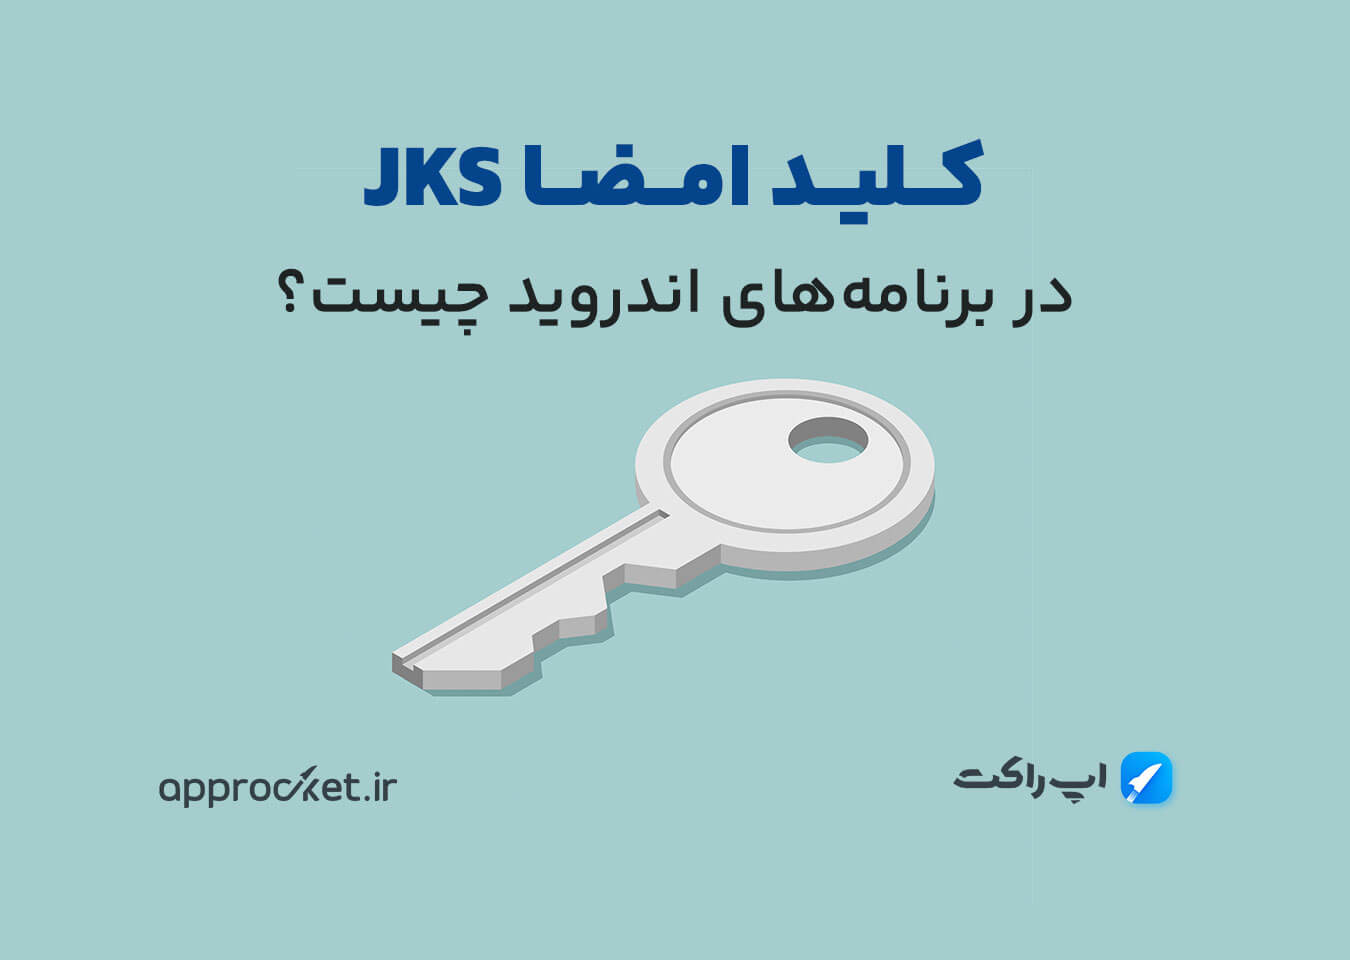 فایل کلید امضا (jks) چیست؟